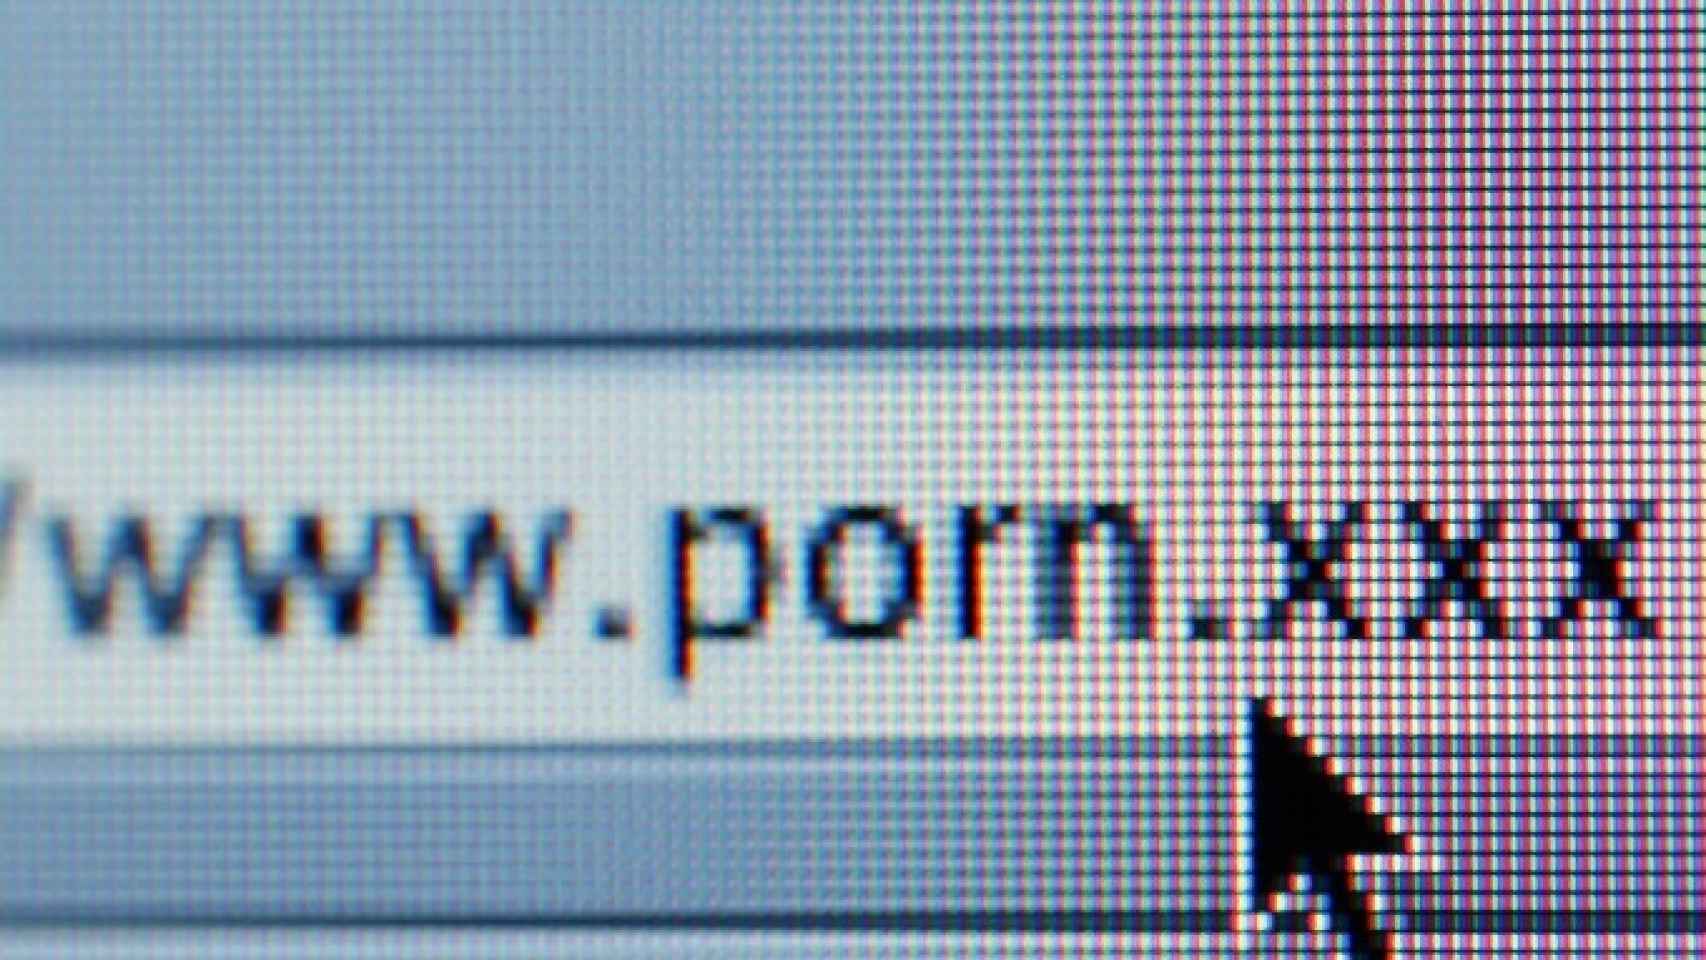 Xxx12yars Pron - El Reino Unido tendrÃ¡ que desbloquear pÃ¡ginas incluidas injustamente en el  filtro anti-porno